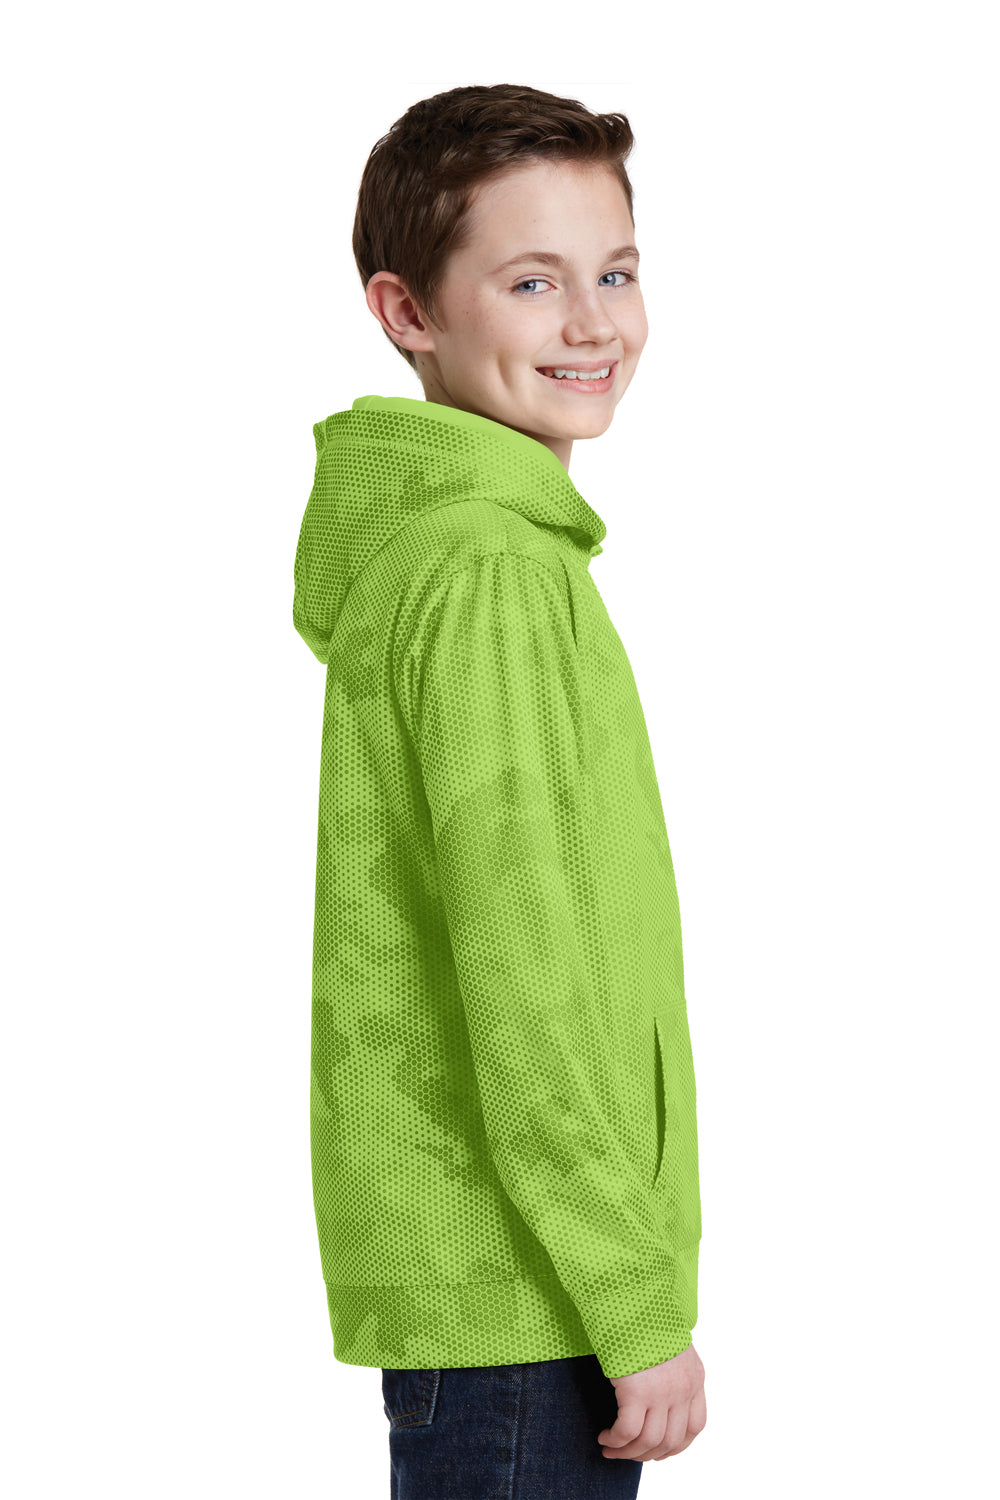 Sport-Tek YST240 Youth Sport-Wick CamoHex Moisture Wicking Fleece Hooded Sweatshirt Hoodie Lime Green Side